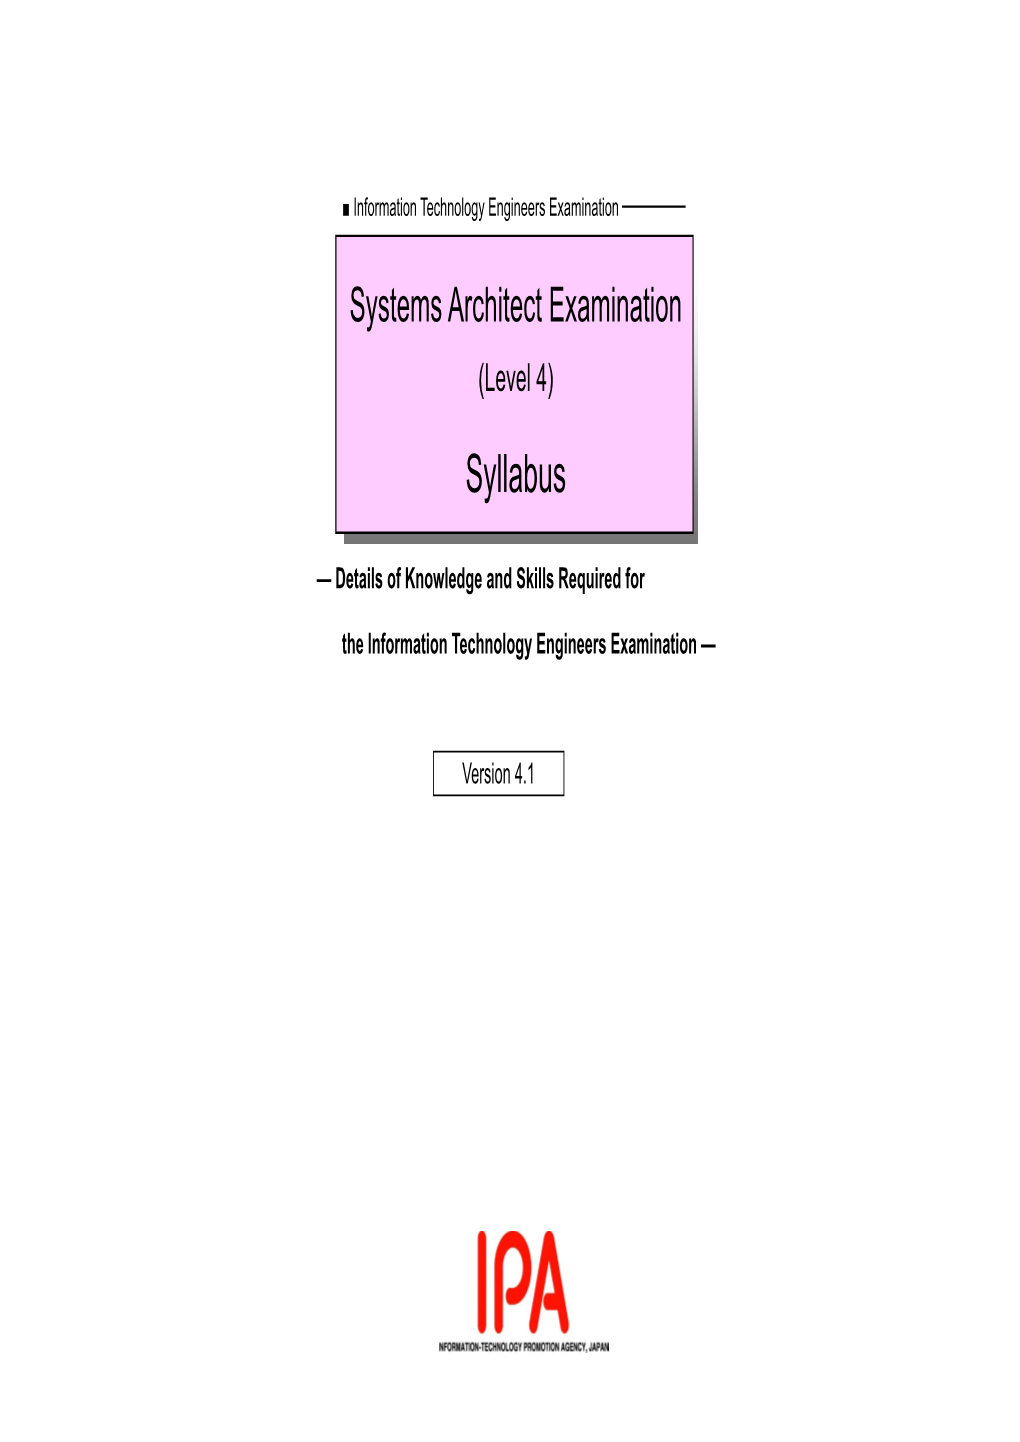 Systems Architect Examination